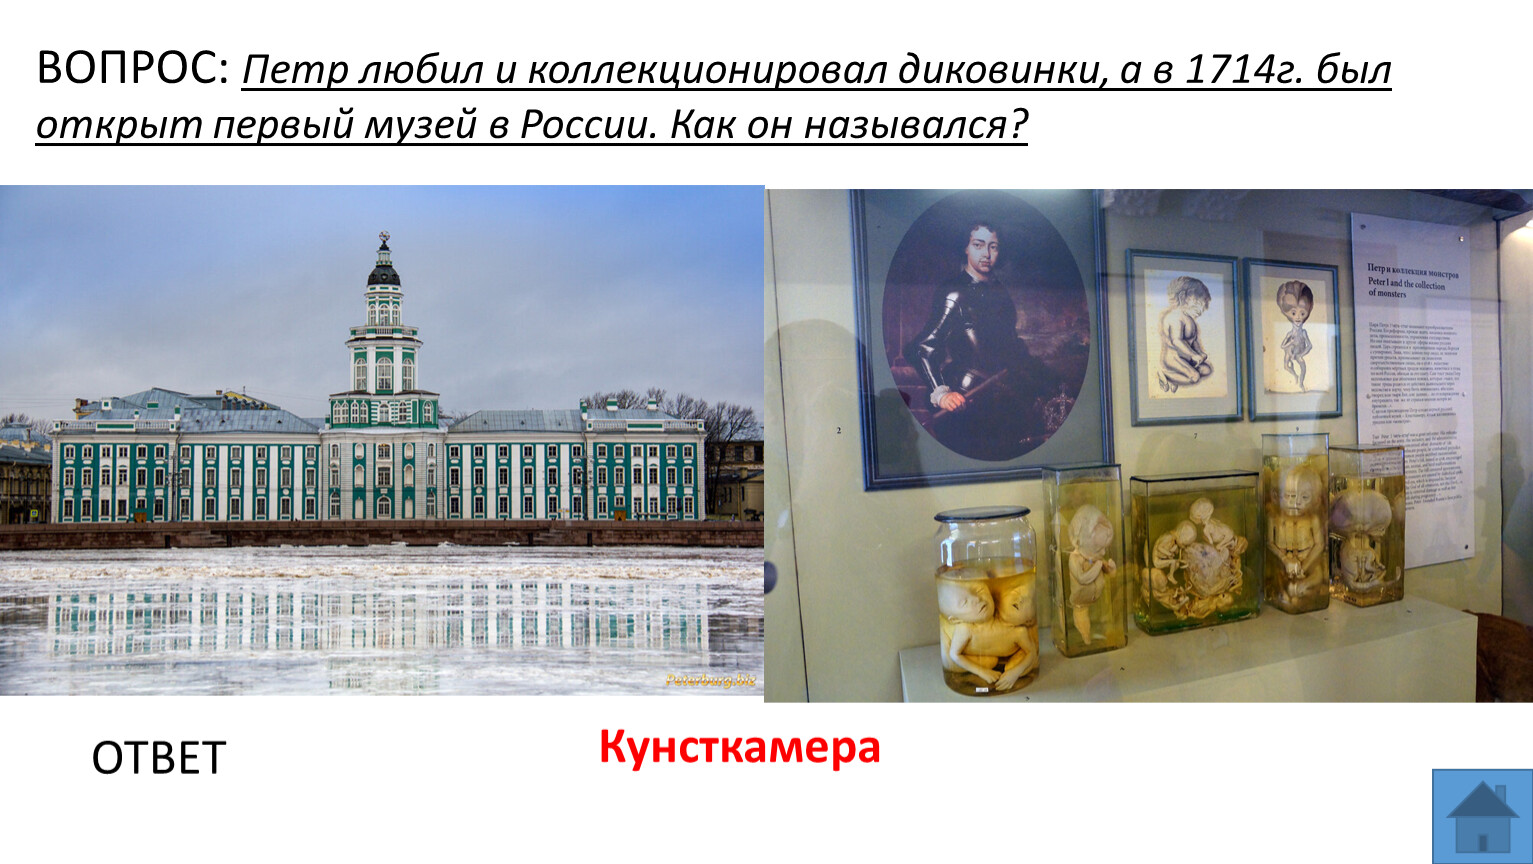 Первый музей в России при Петре